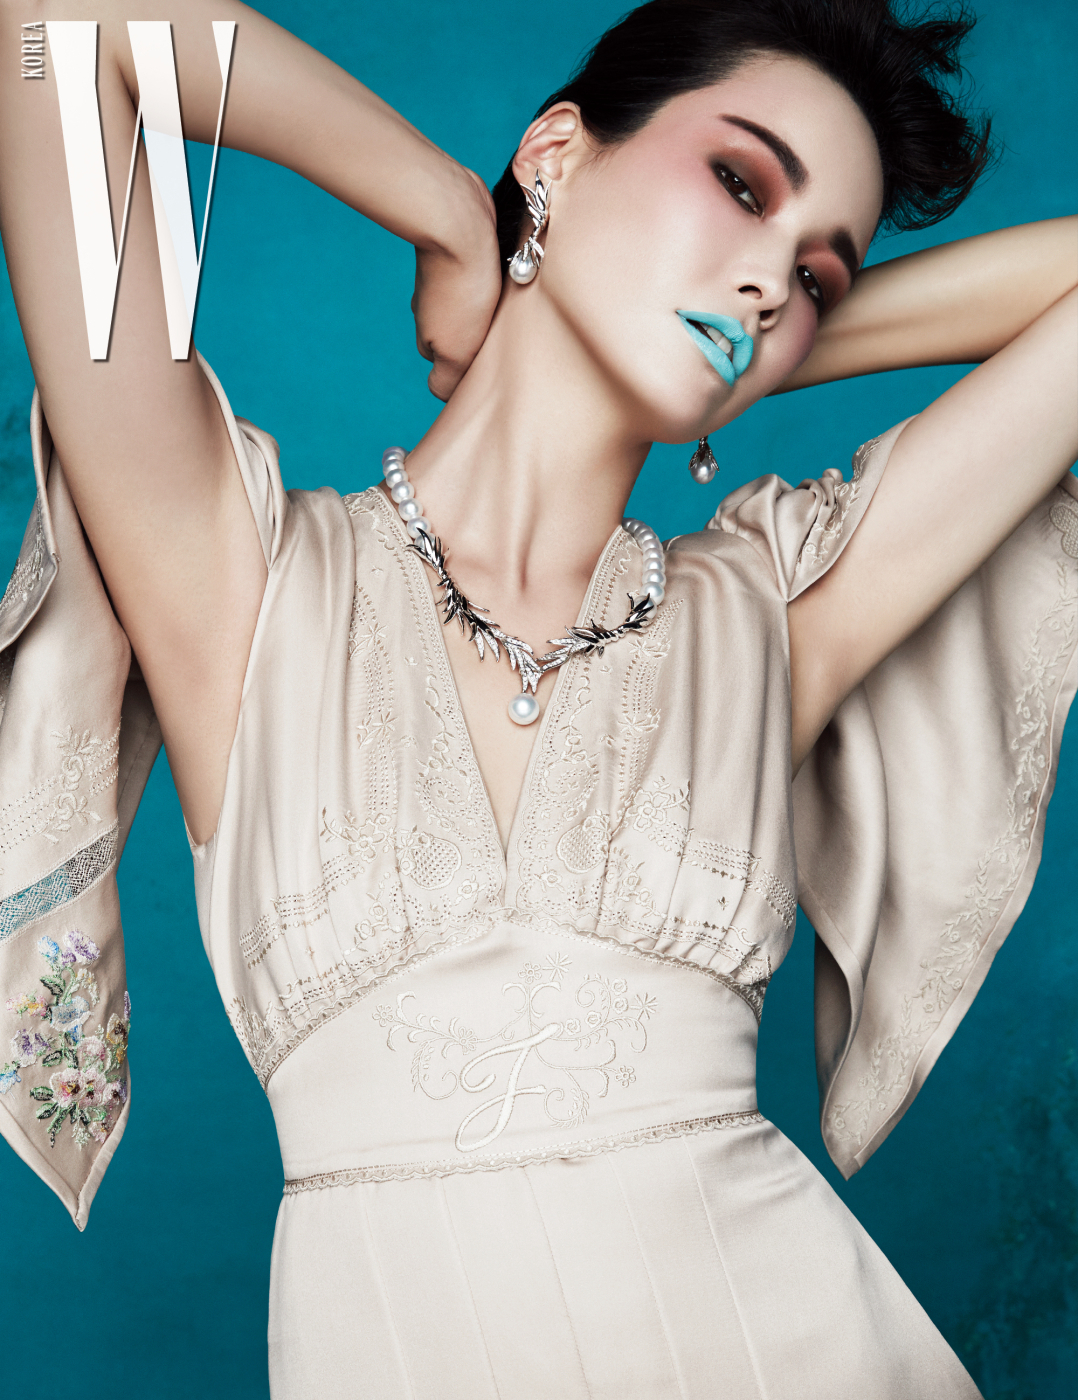 나뭇잎과 아침 이슬을 형상화해 18K 화이트 골드에 남양진주와 다이아몬드를 세팅한 목걸이와 귀고리는 Tasaki 제품. 자수 장식 드레스는 Fendi 제품